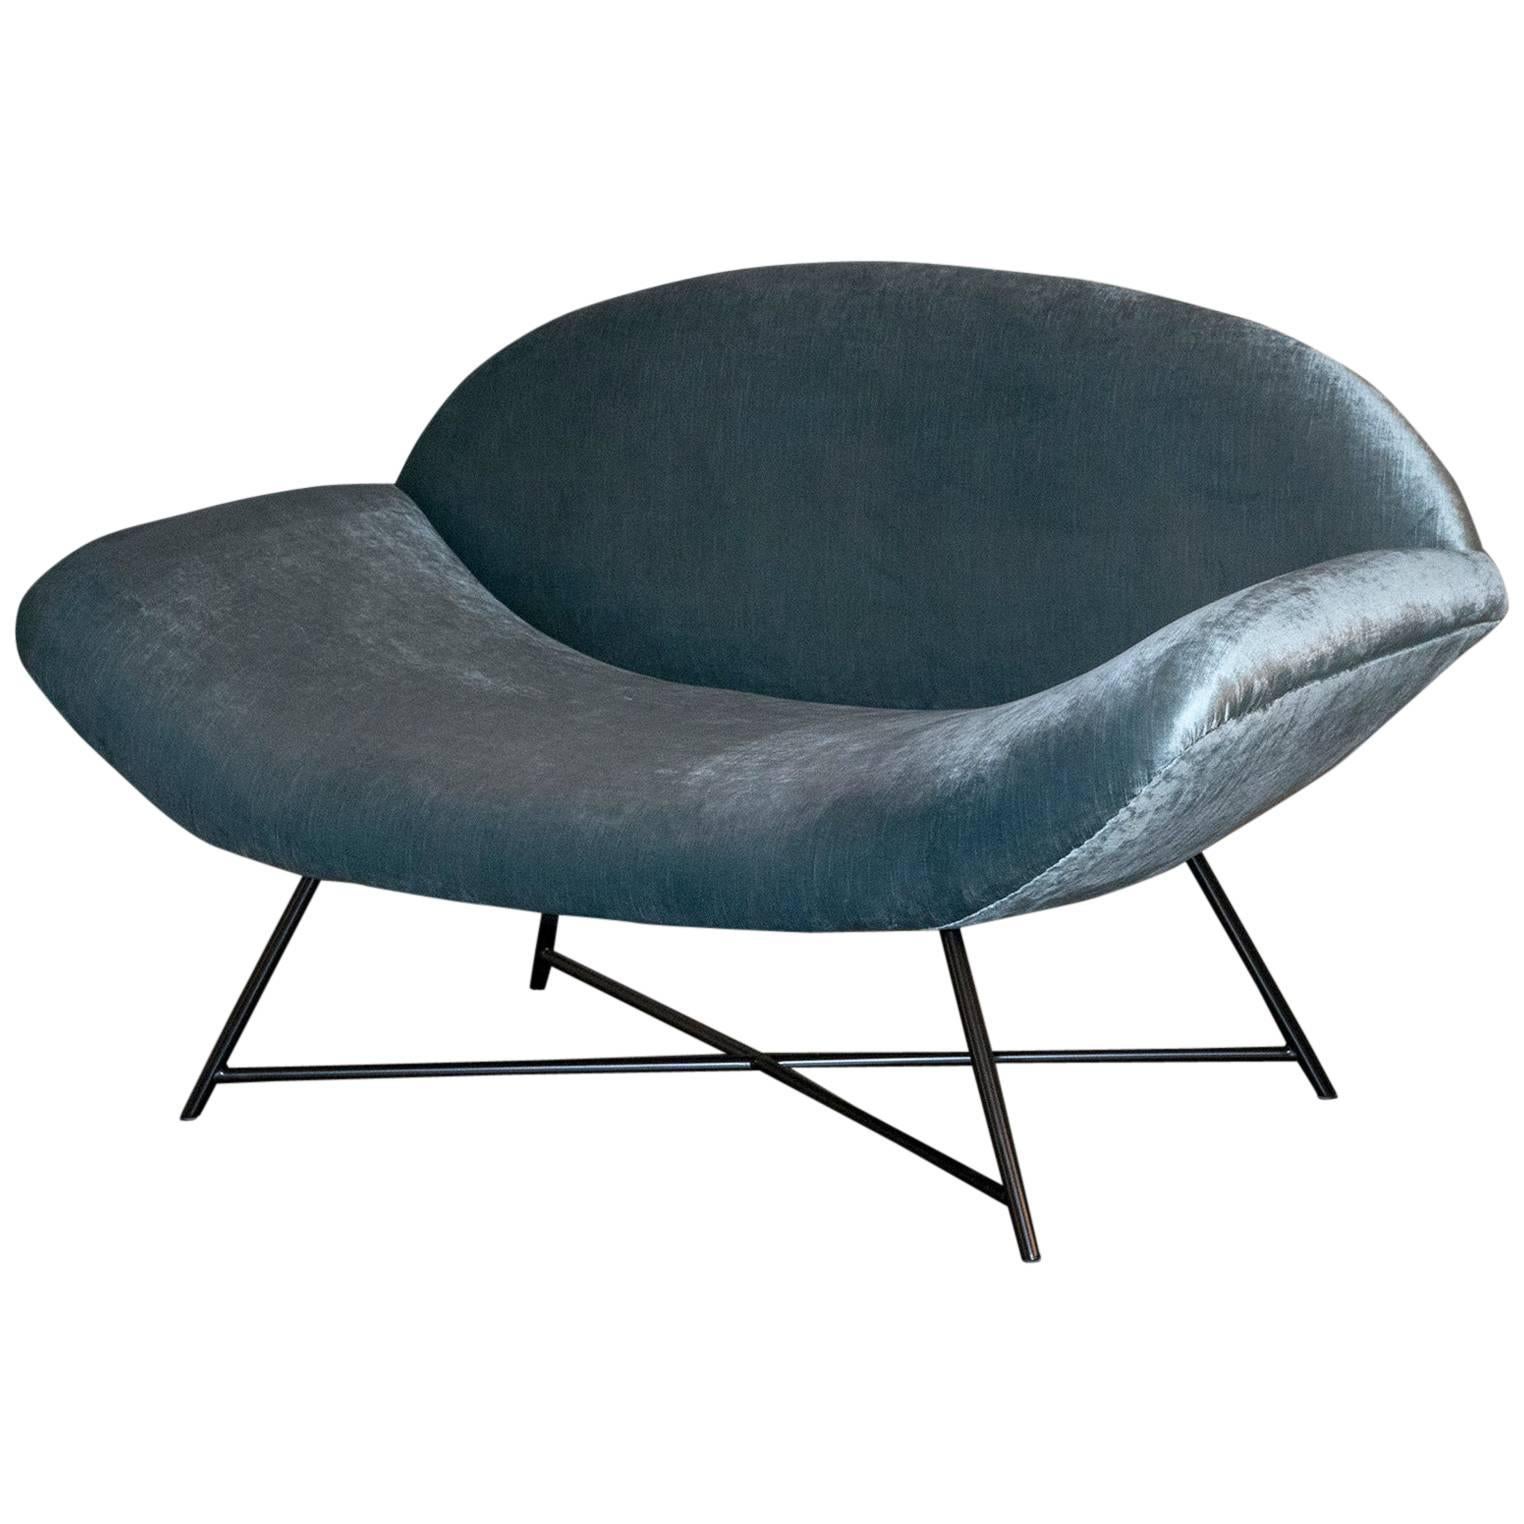 1960s Italian Lounge Chair